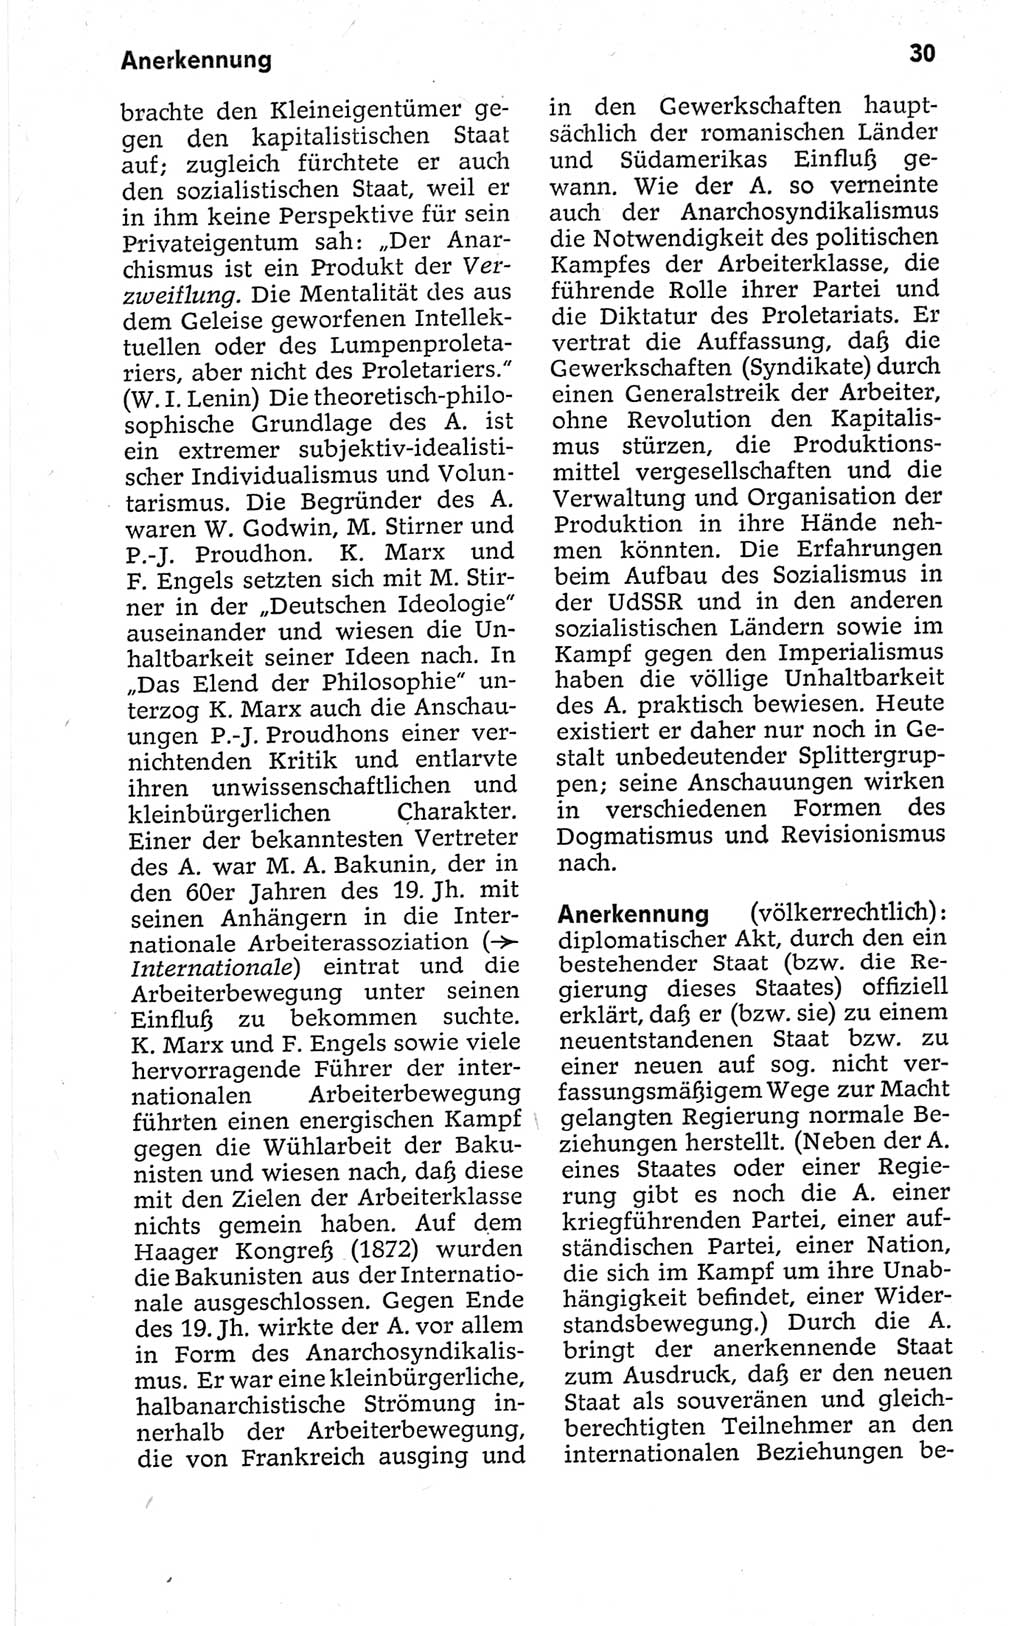 Kleines politisches Wörterbuch [Deutsche Demokratische Republik (DDR)] 1967, Seite 30 (Kl. pol. Wb. DDR 1967, S. 30)